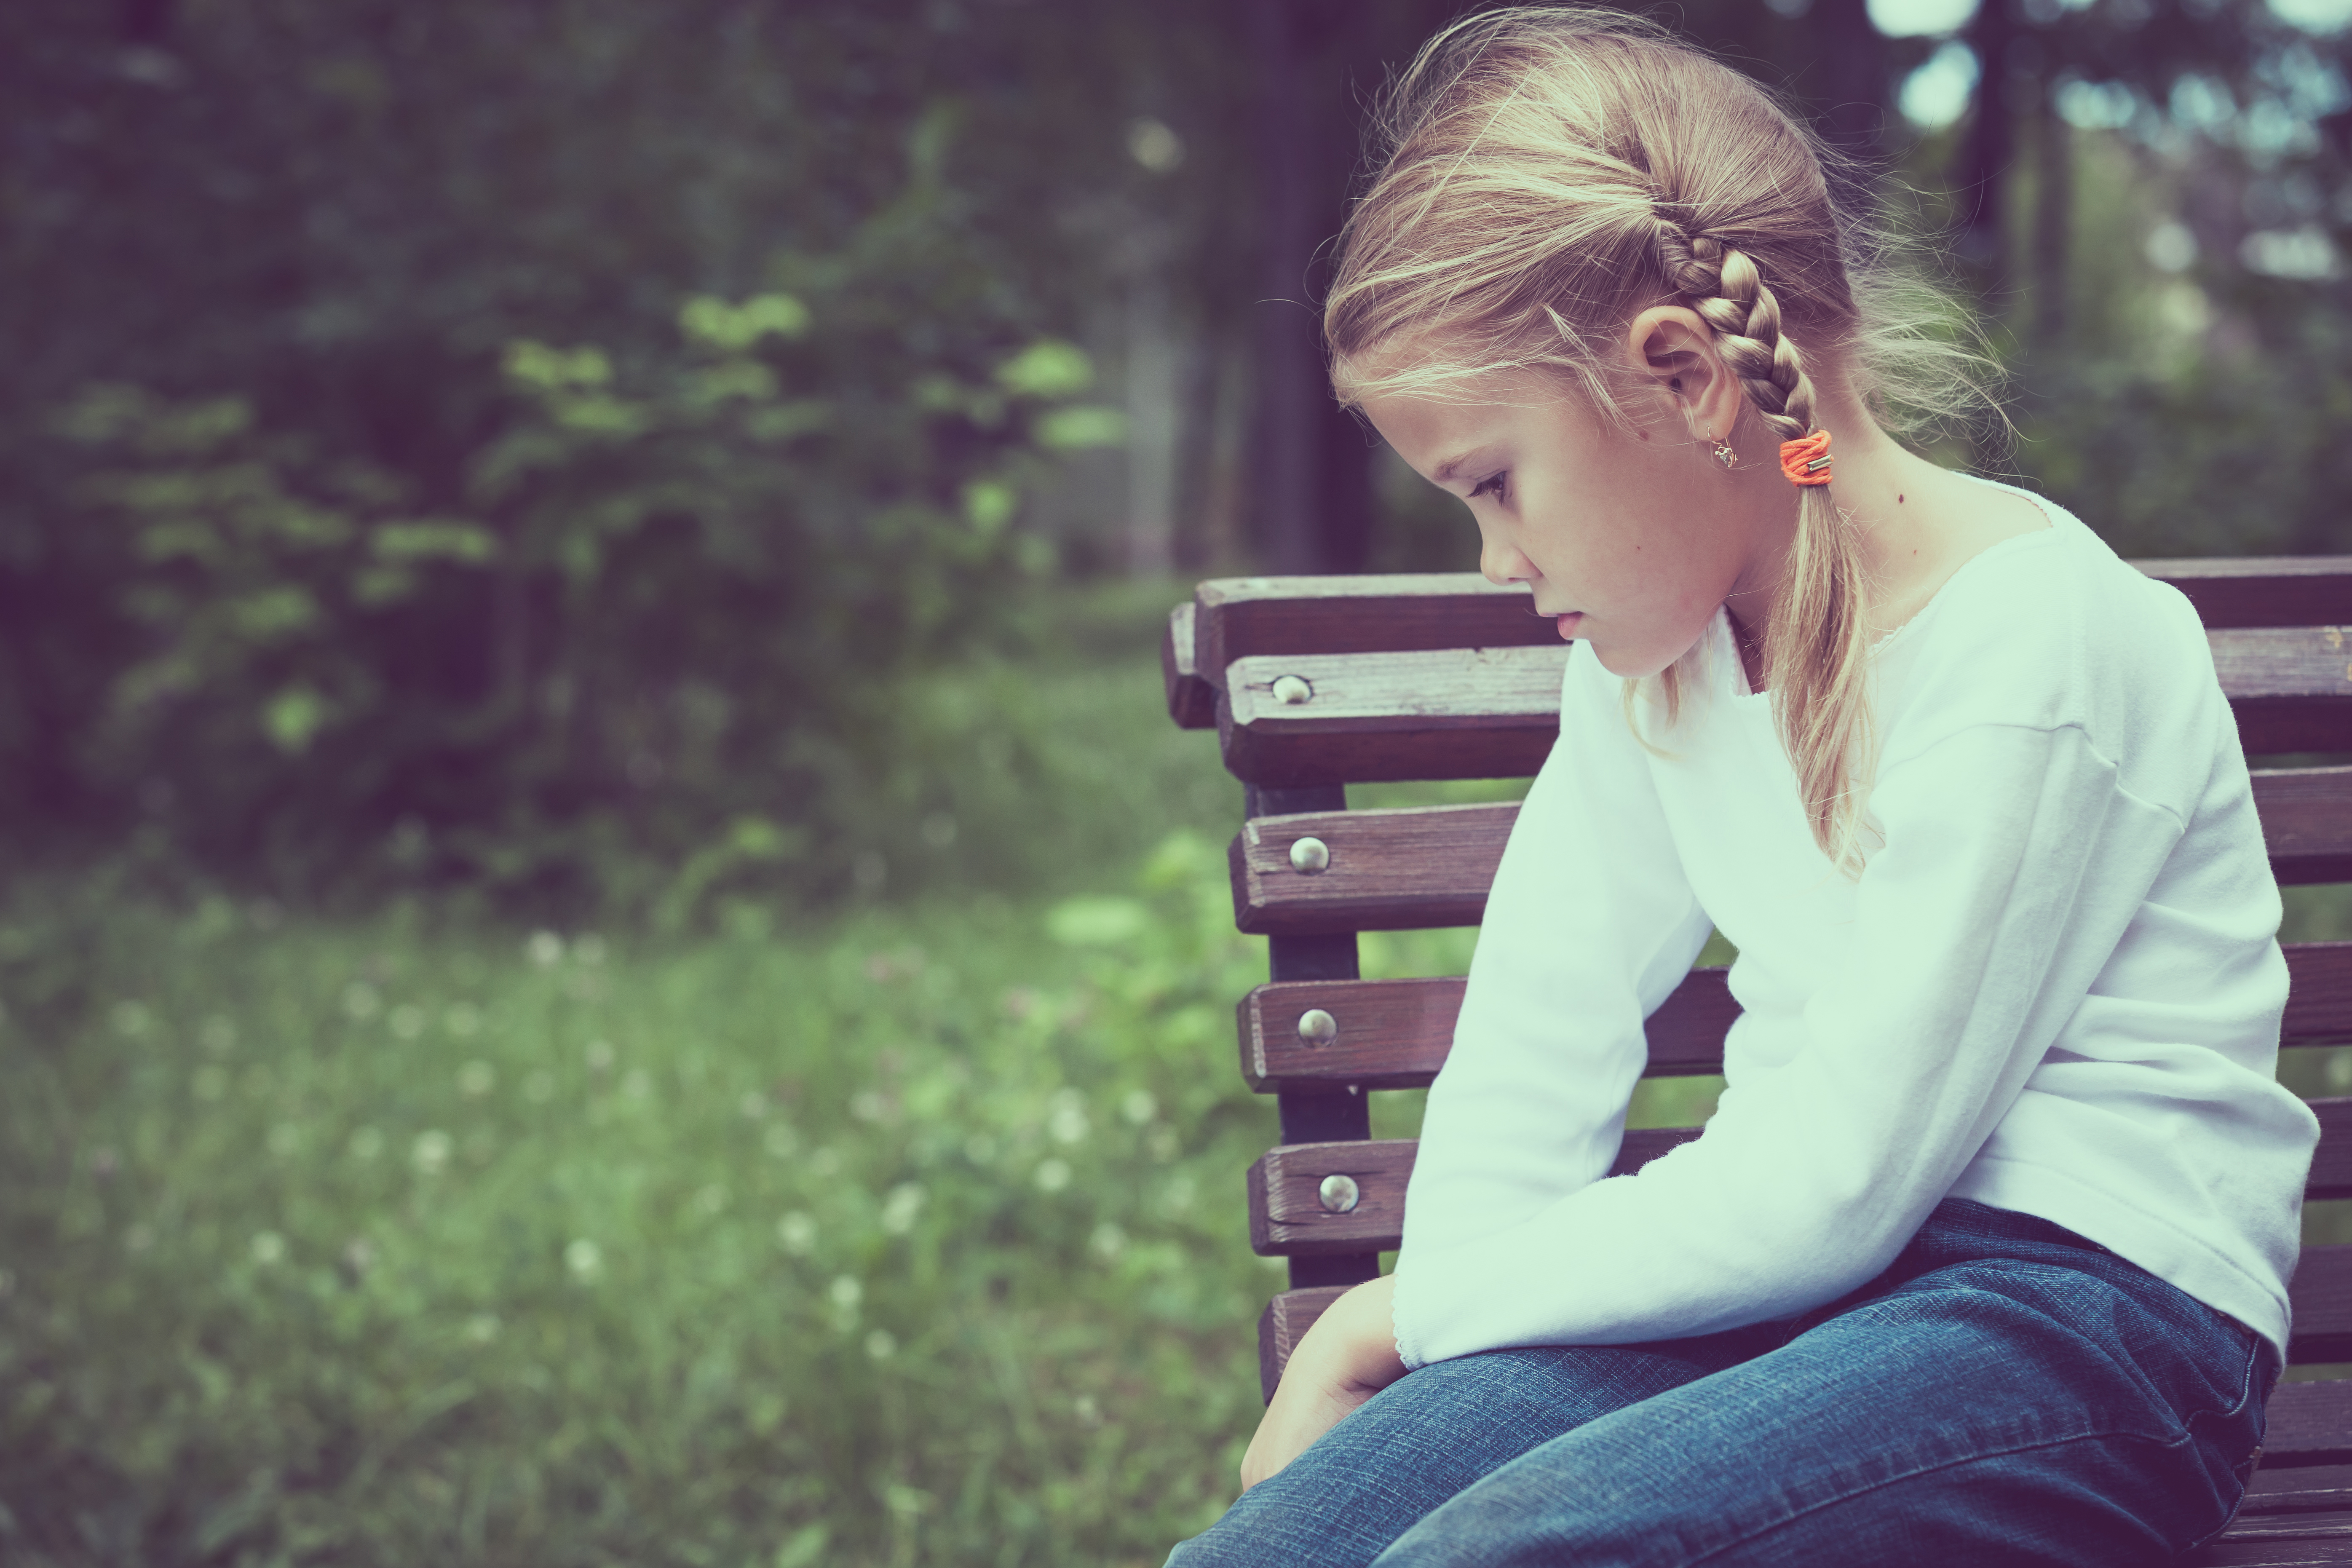 Ein kleines Mädchen sitzt auf einer Bank | Quelle: Shutterstock